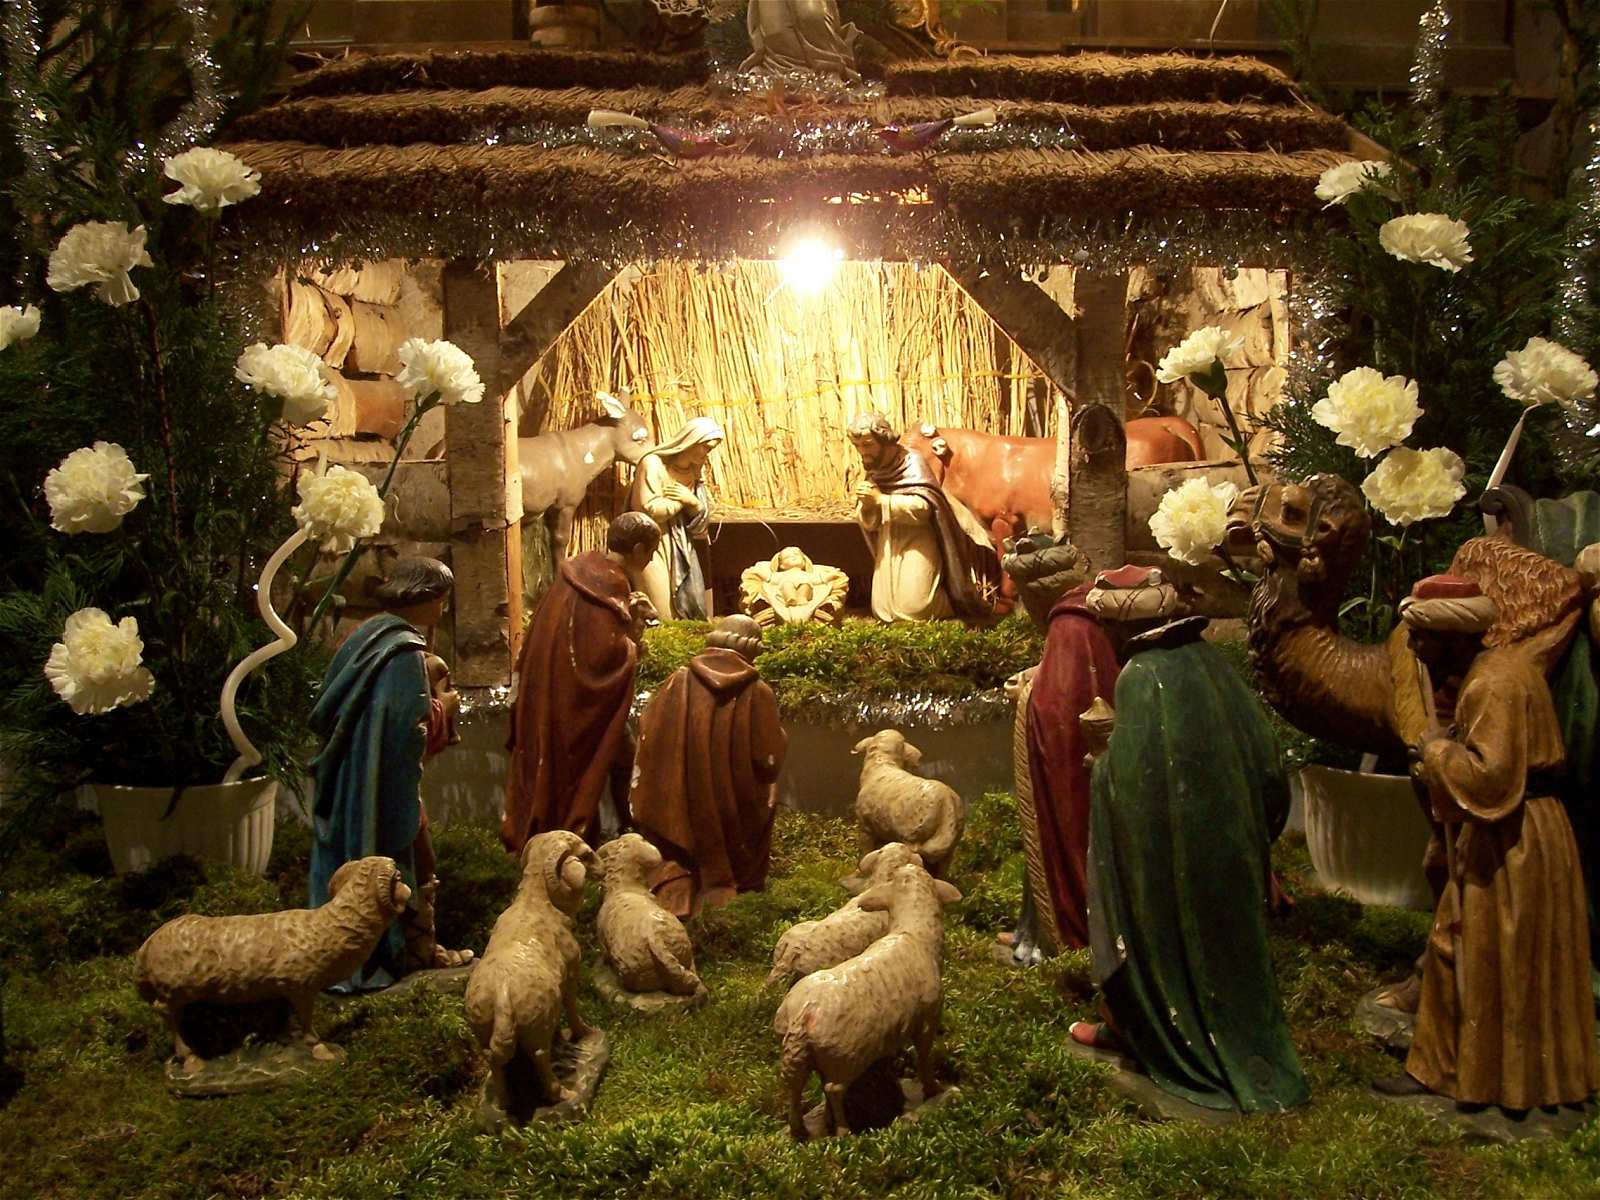 Fêtes Et Traditions - Noël - La Crèche De Noël intérieur Image Crèche De Noel Gratuite 